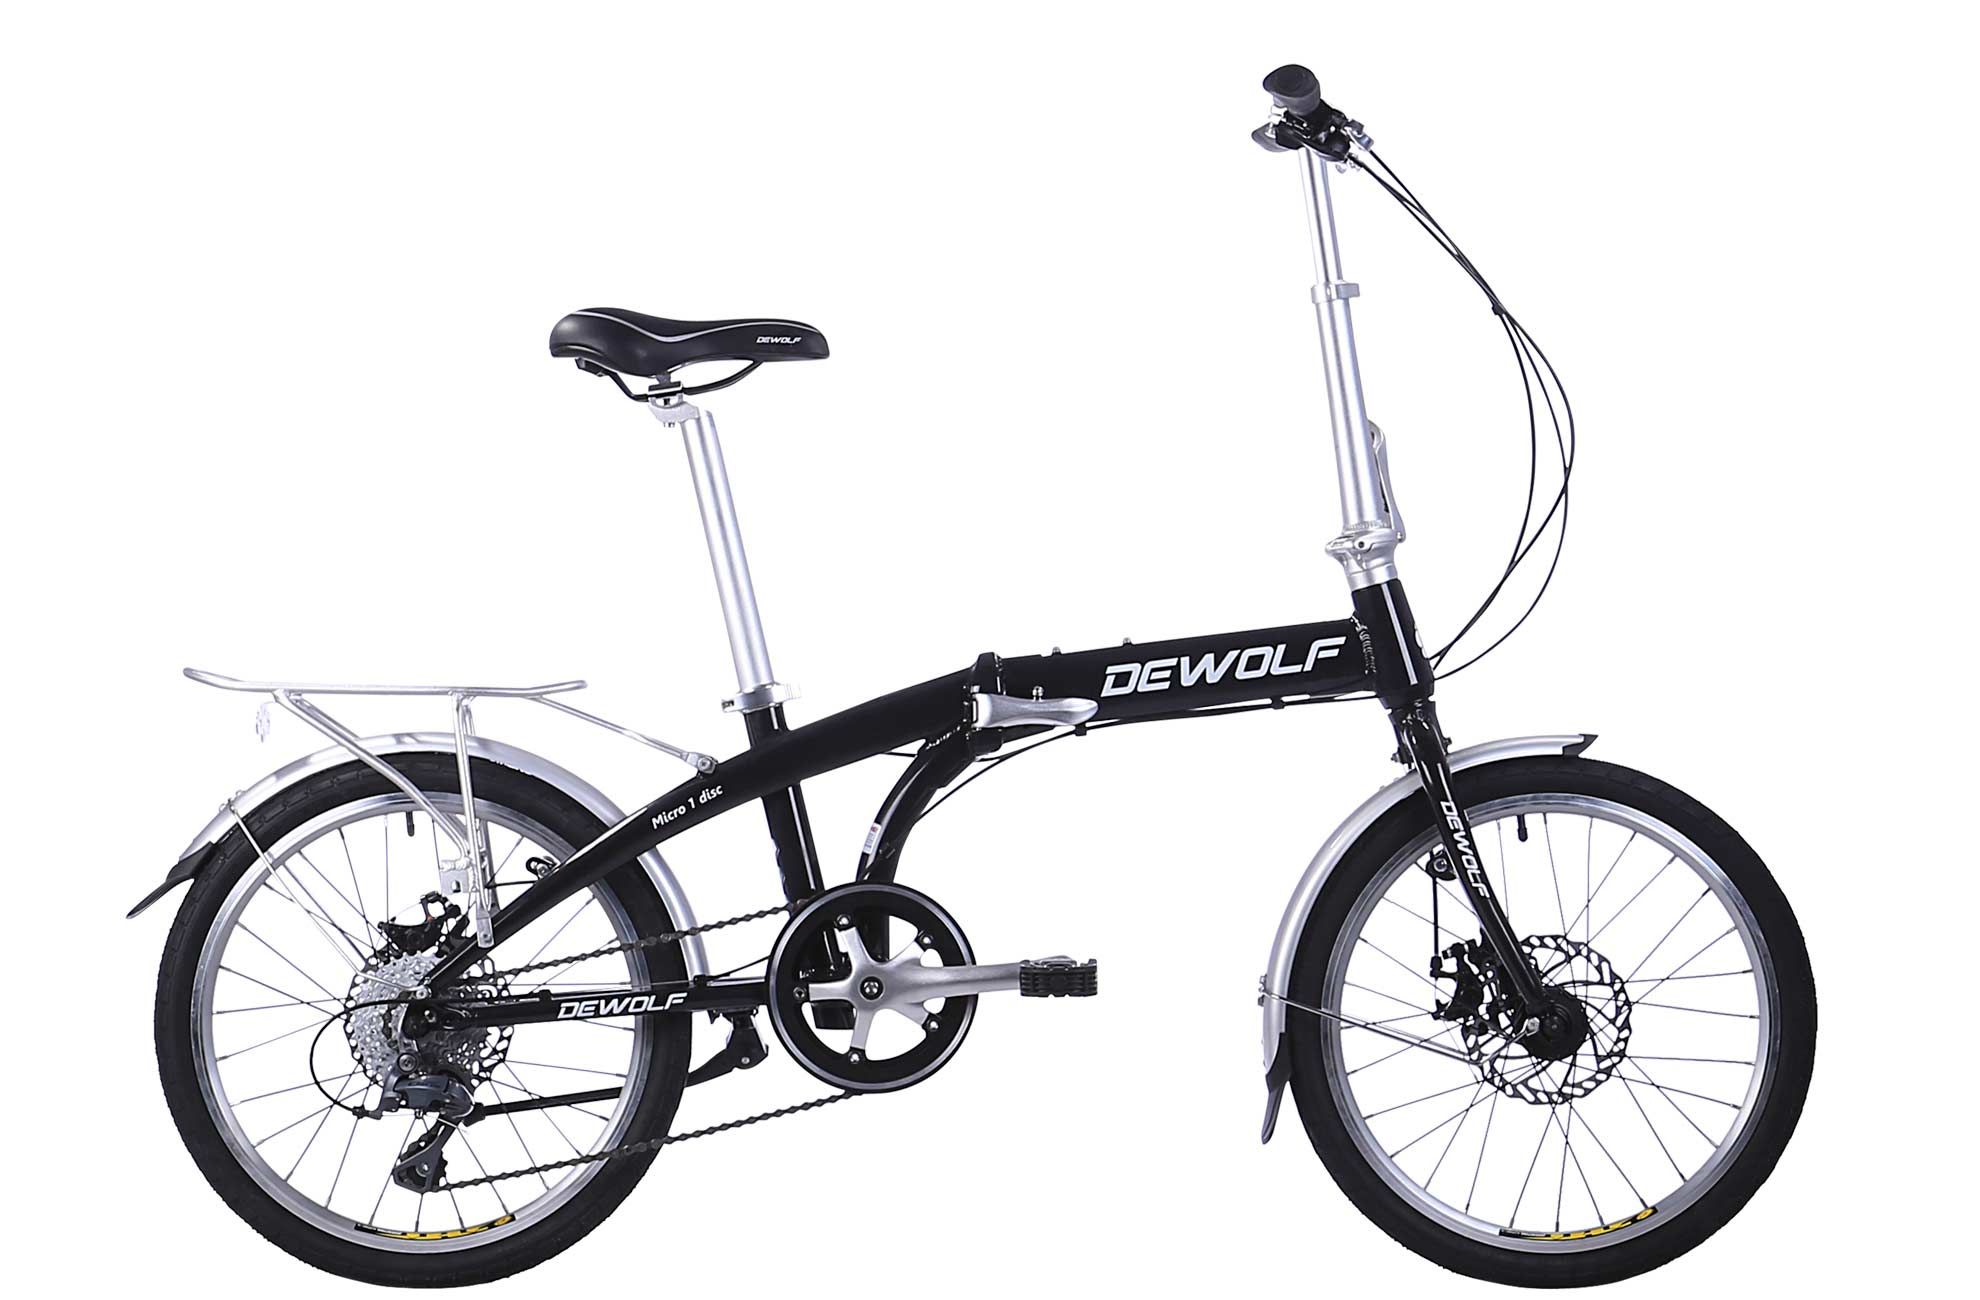  Велосипед Dewolf Micro 1 2016